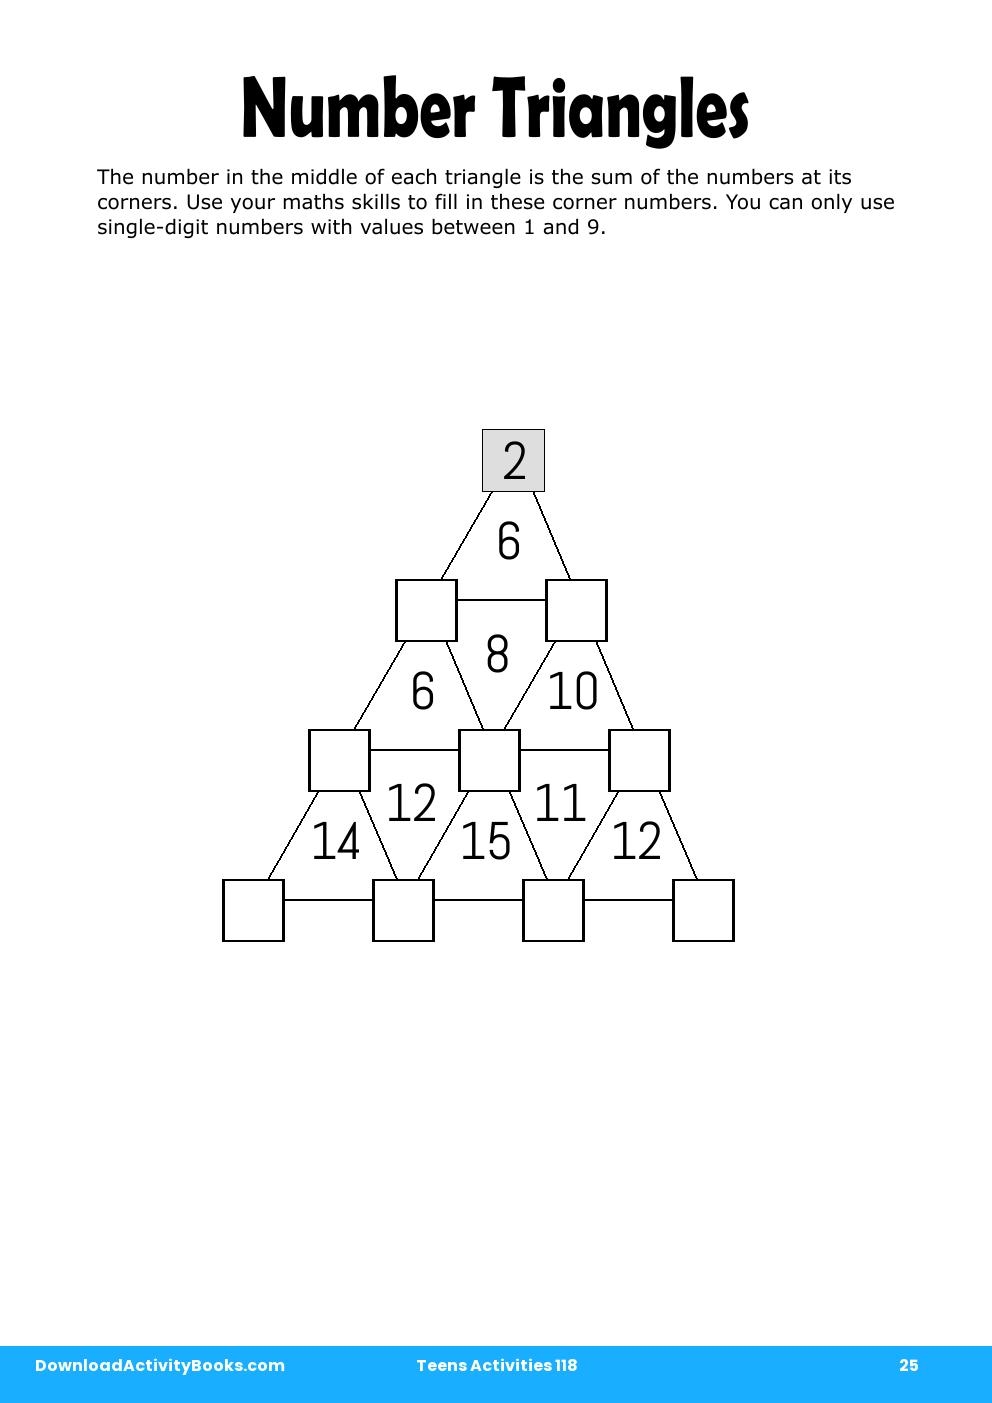 Number Triangles in Teens Activities 118